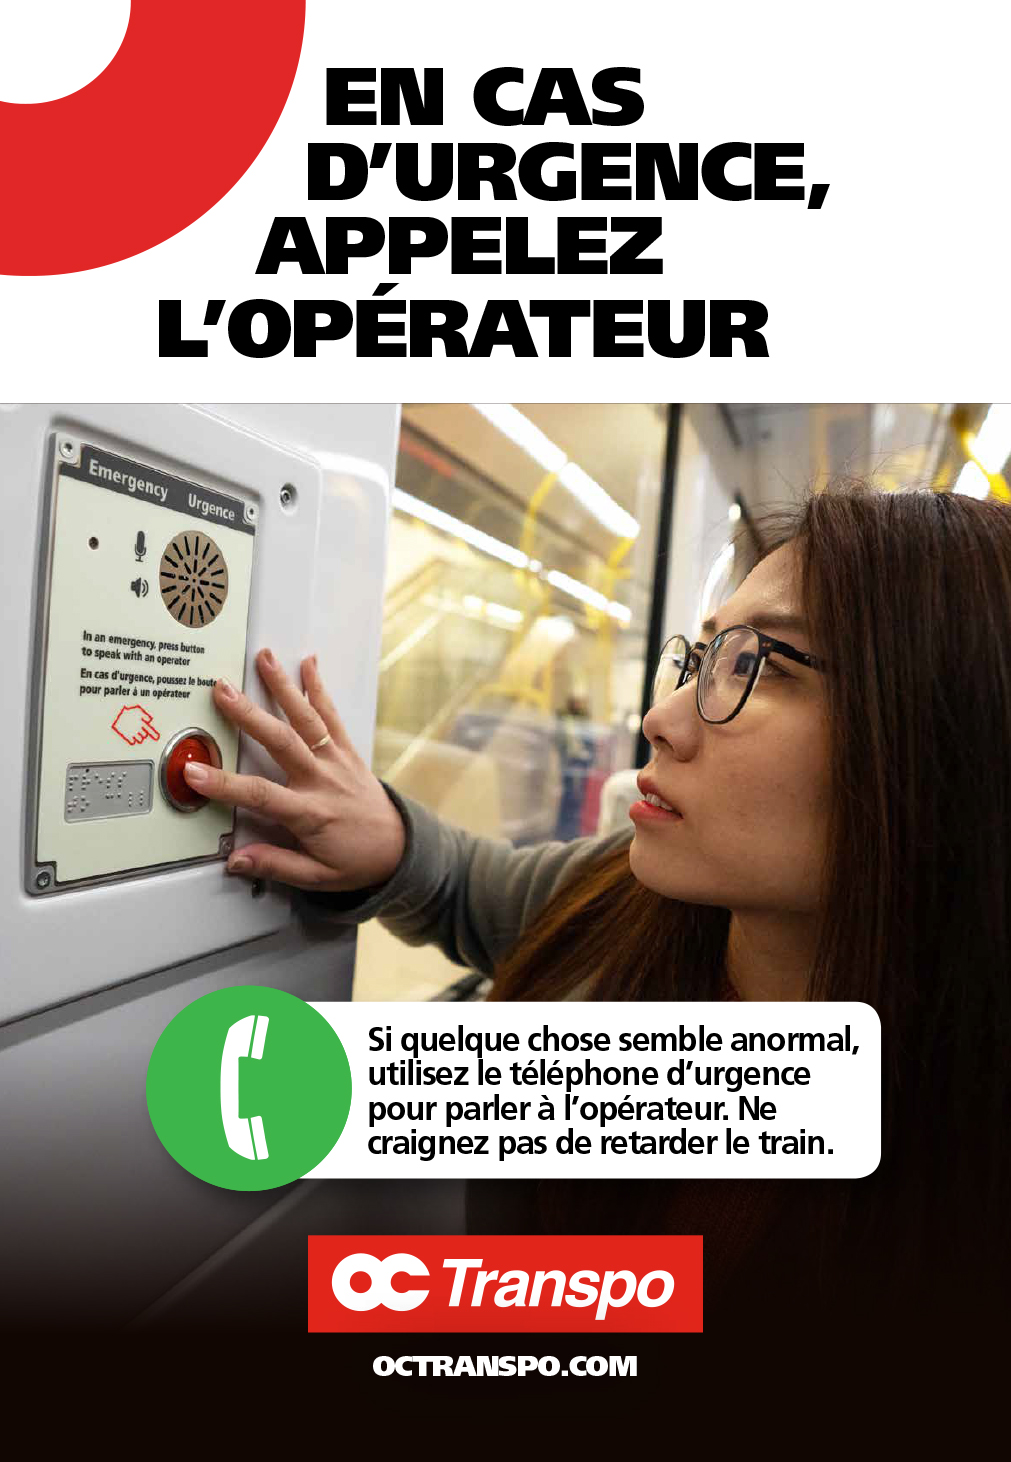 Une femme utilisant un téléphone d'urgence. Texte sur l'image : Si quelque chose semble anormal, utilisez le téléphone d'urgence pour parler à l'opérateur. Ne craignez pas de retarder le train.